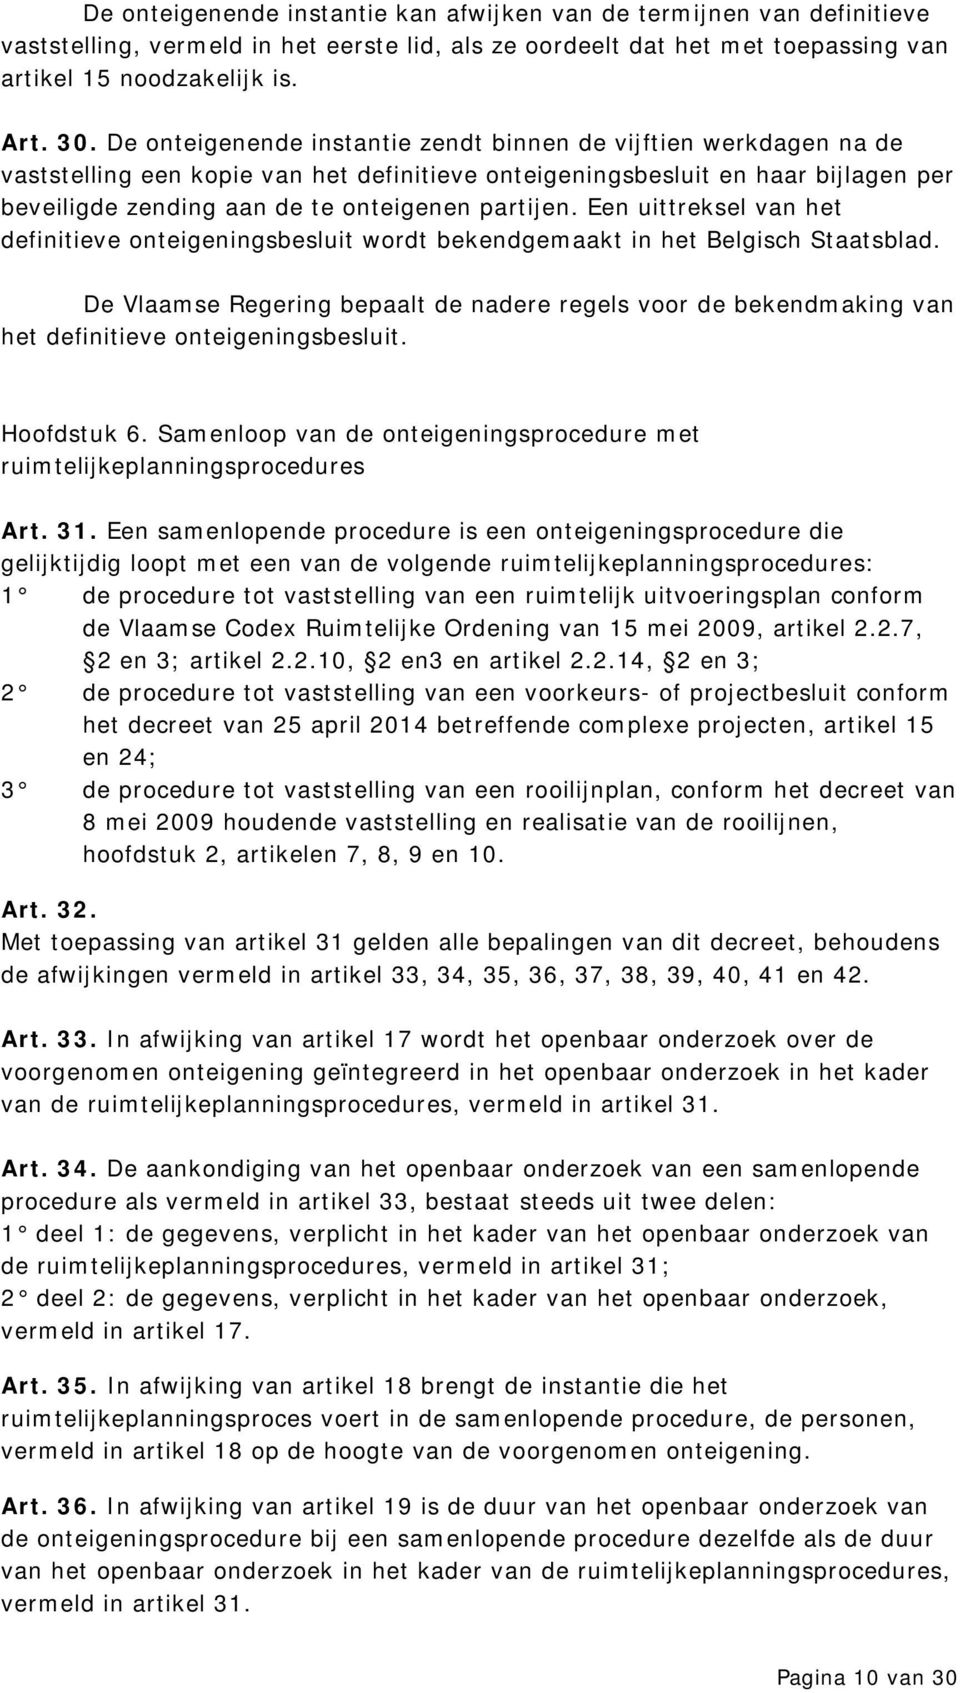 Een uittreksel van het definitieve onteigeningsbesluit wordt bekendgemaakt in het Belgisch Staatsblad.